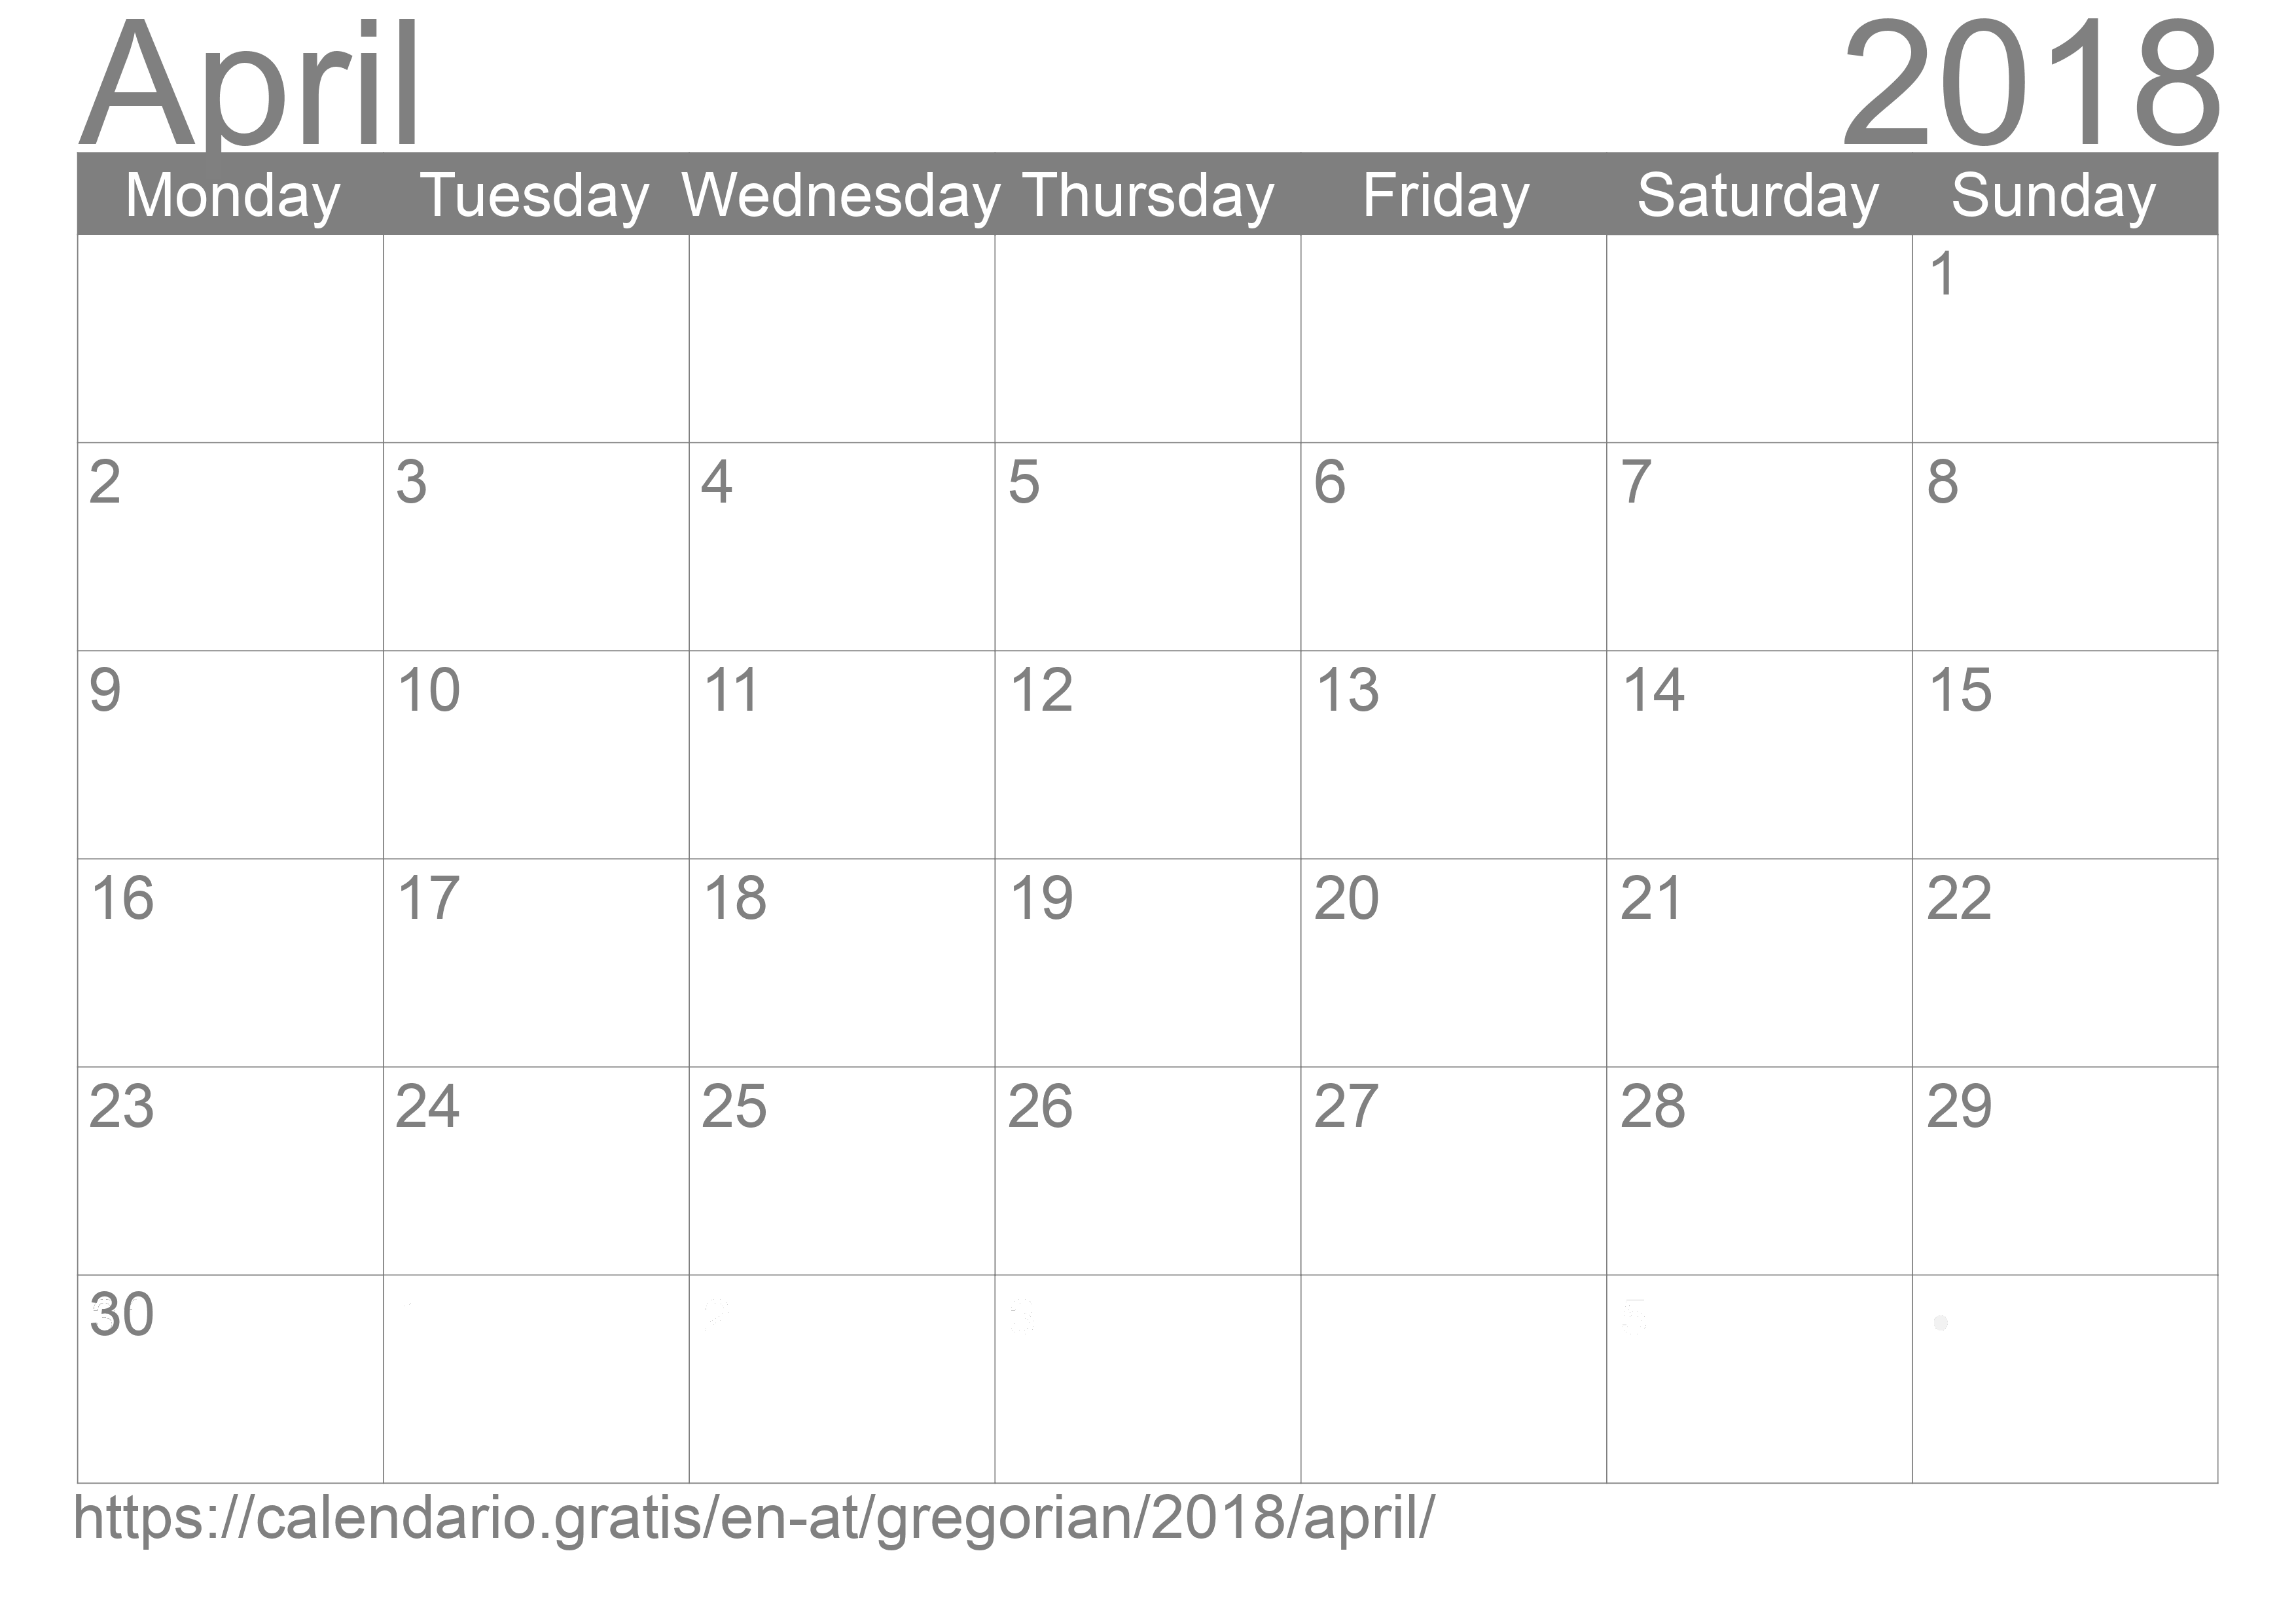 Calendar April 2018 to print